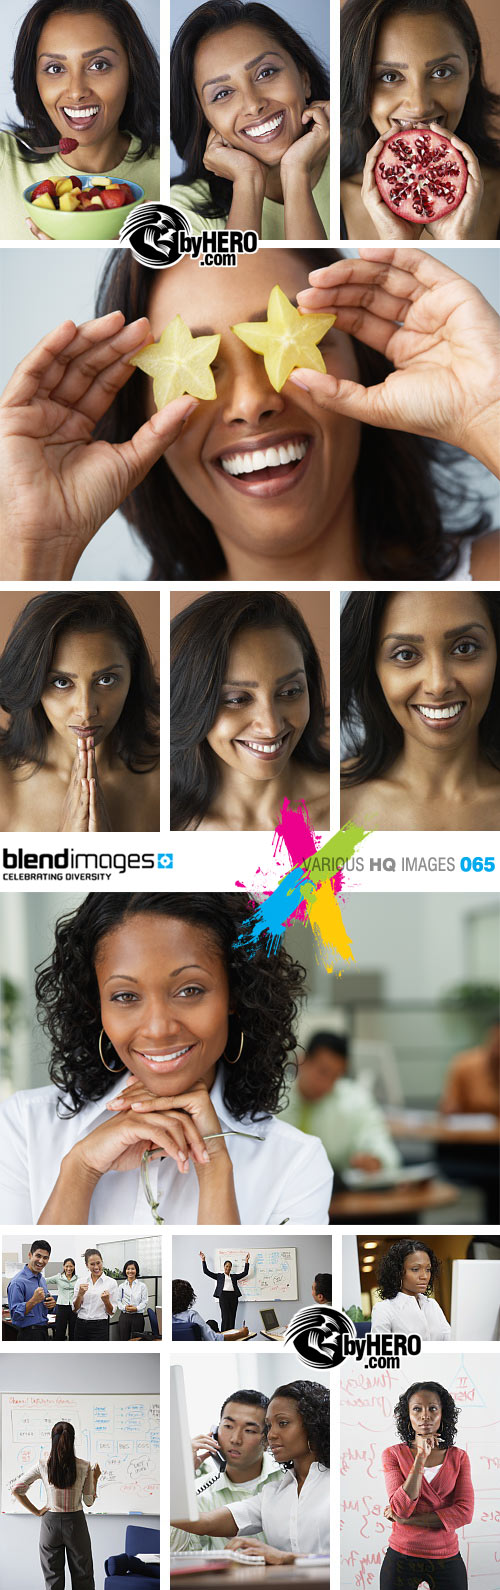 BlendImages - Various HQ Images 065